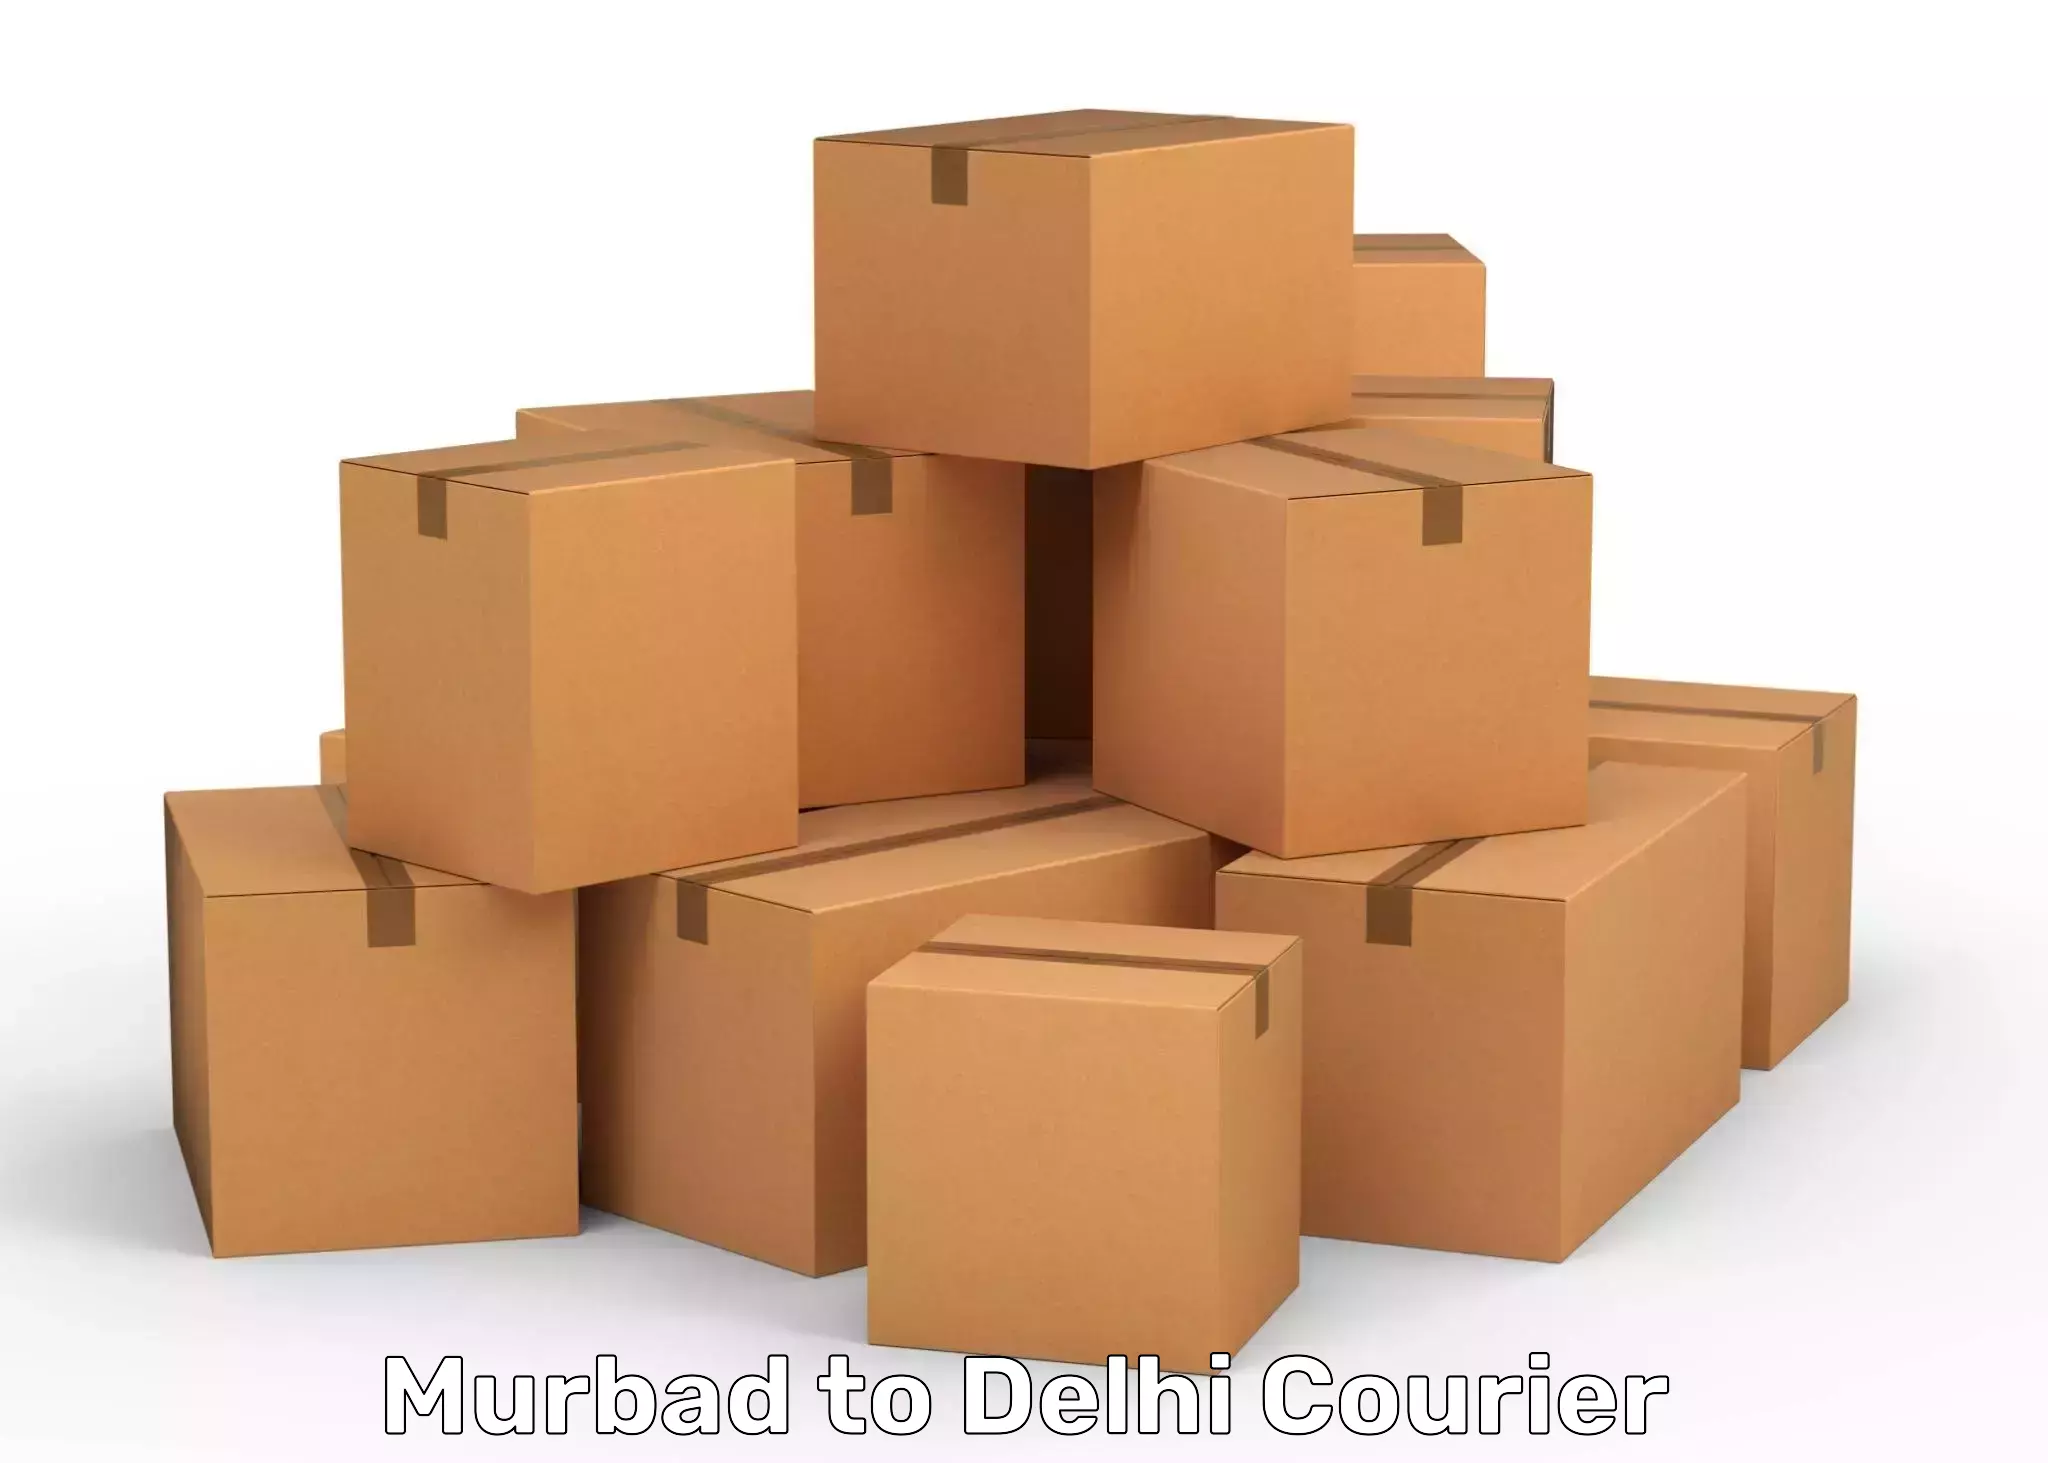 Cargo delivery service Murbad to Subhash Nagar